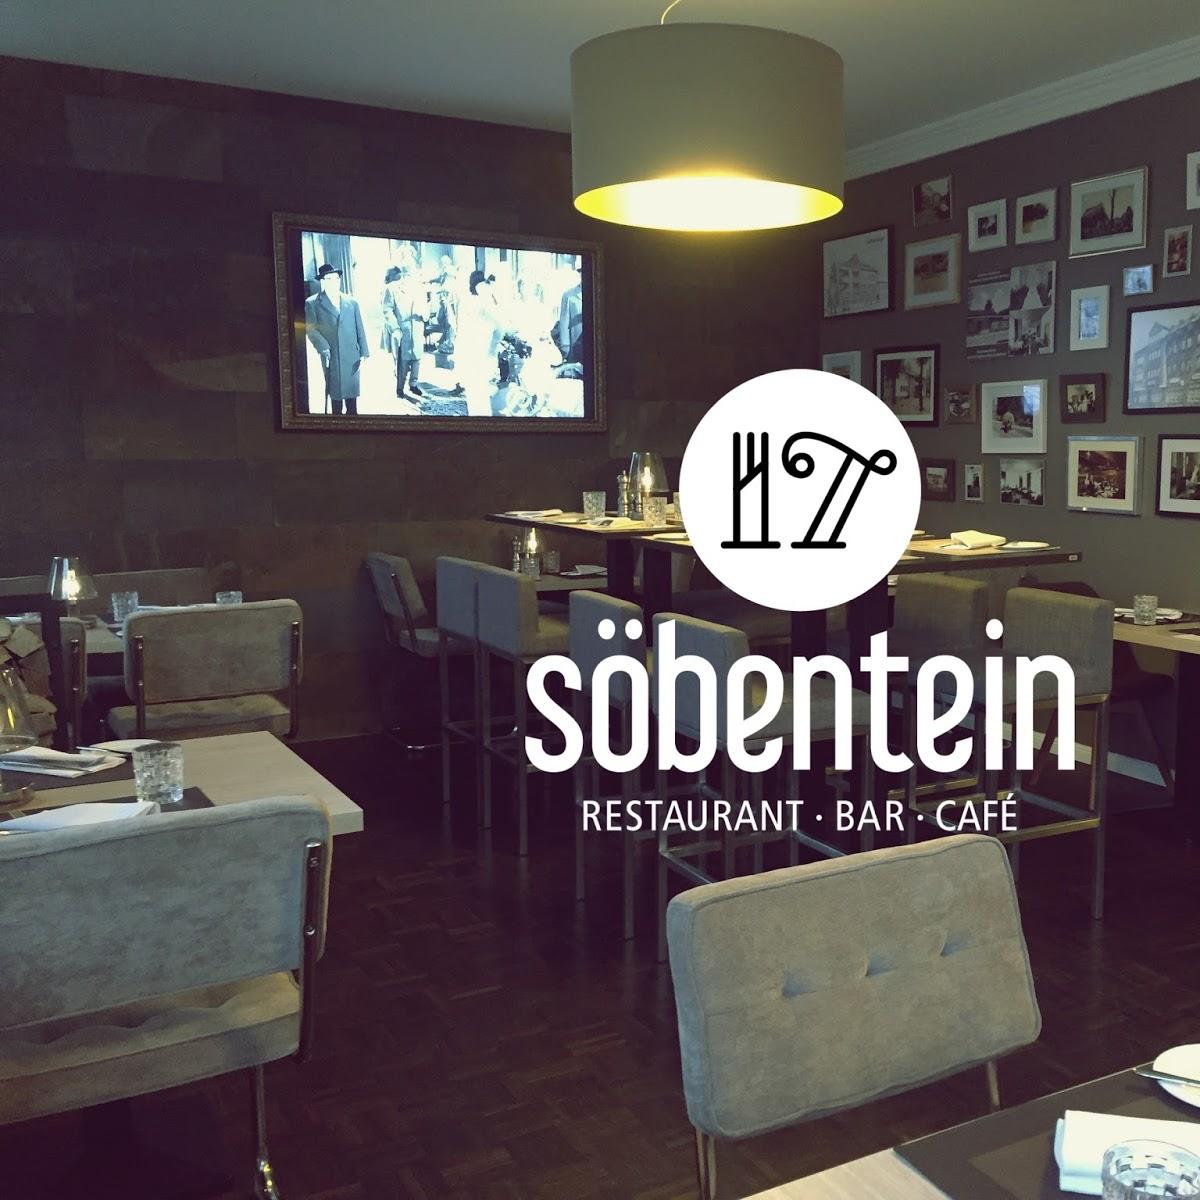 Restaurant "Restaurant Söbentein" in  Ahrensburg